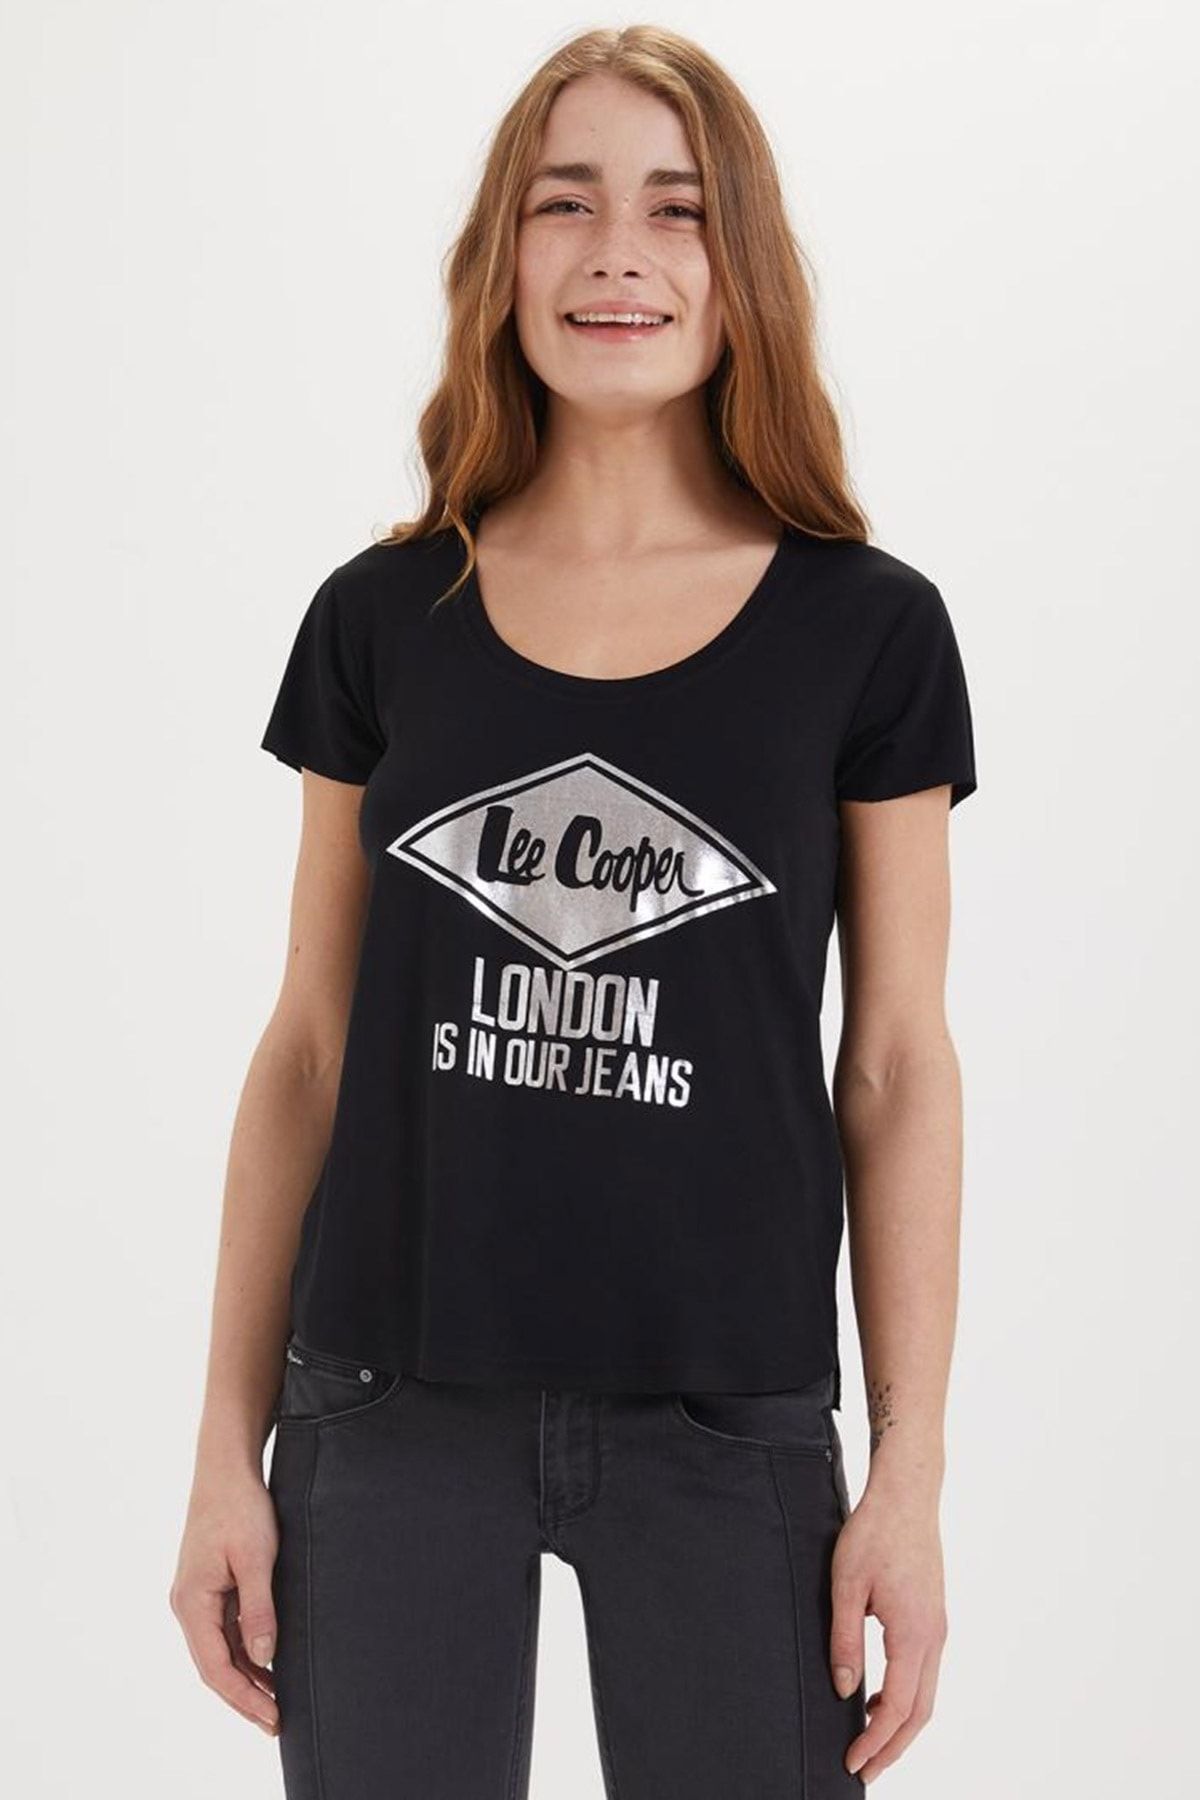 Lee Cooper Kadın Darla O Yaka T-Shirt Siyah 192 LCF 242023